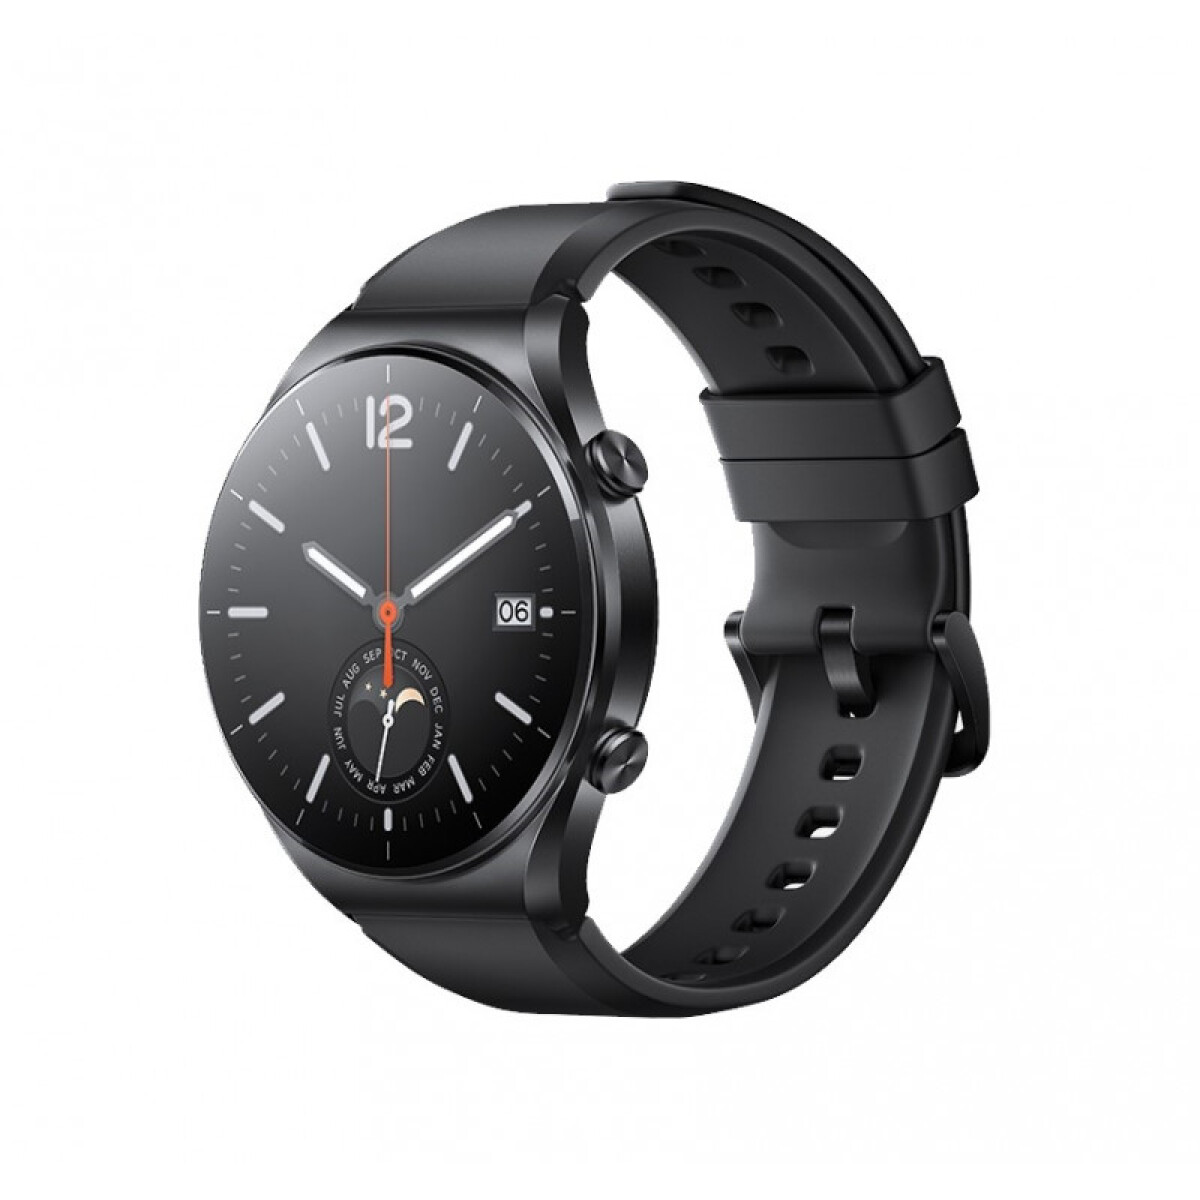 Smartwatch xiaomi mi watch s1 gps 1.43' - Black 